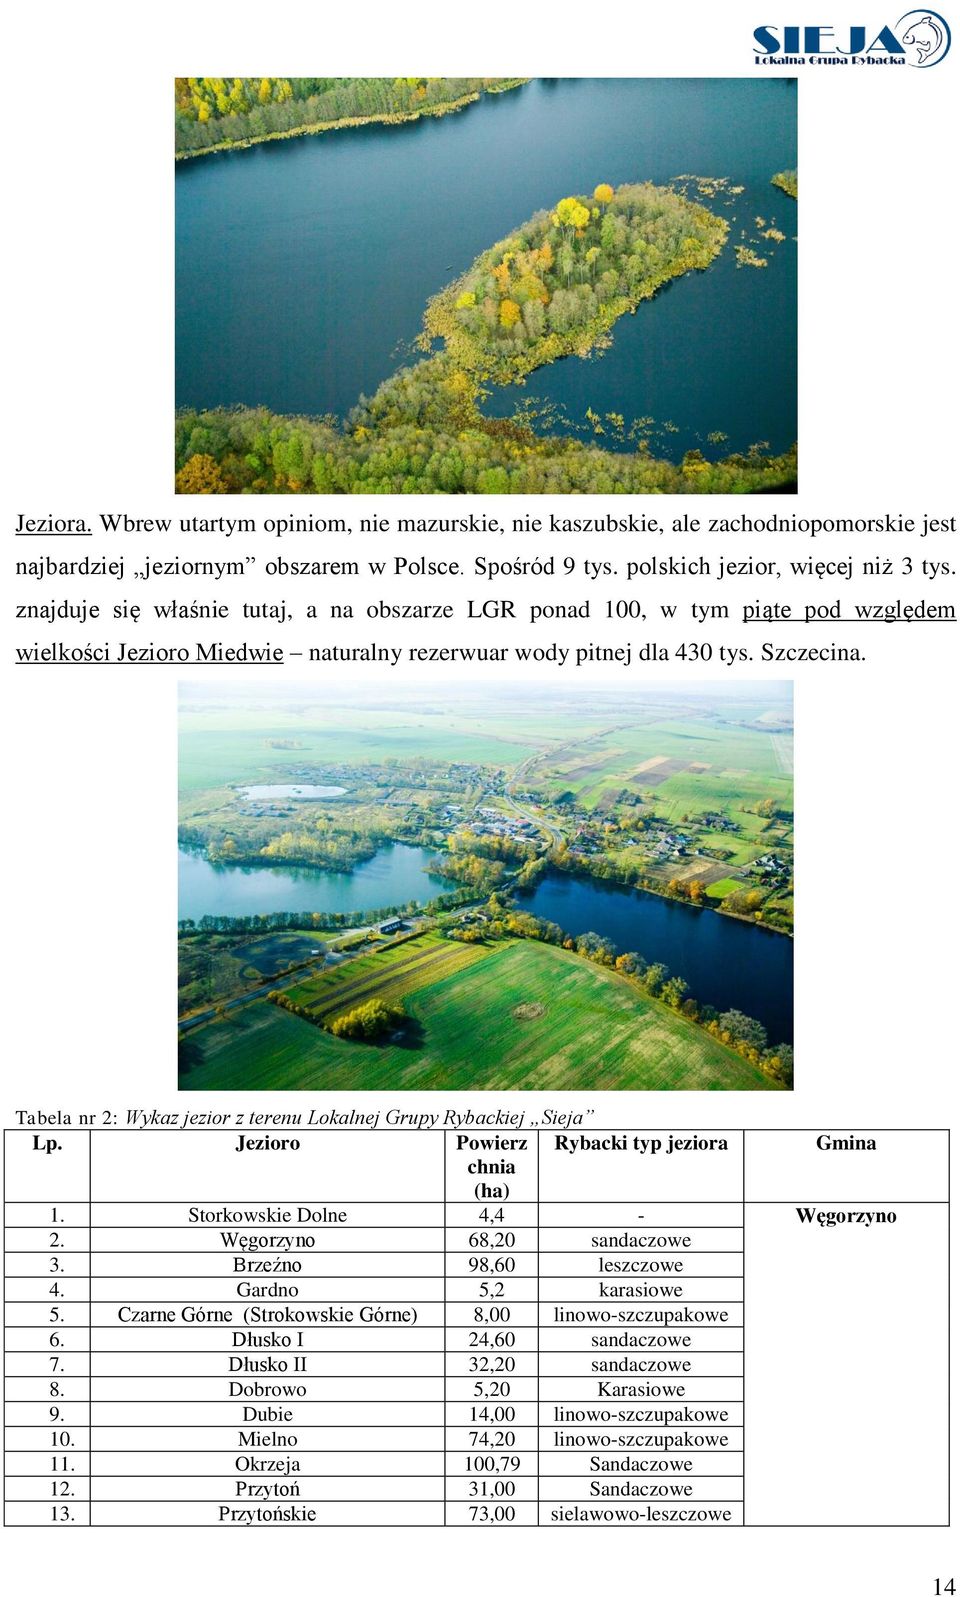 Tabela nr 2: Wykaz jezior z terenu Lokalnej Grupy Rybackiej Sieja Lp. Jezioro Powierz Rybacki typ jeziora Gmina chnia (ha) 1. Storkowskie Dolne 4,4 - Węgorzyno 2. Węgorzyno 68,20 sandaczowe 3.